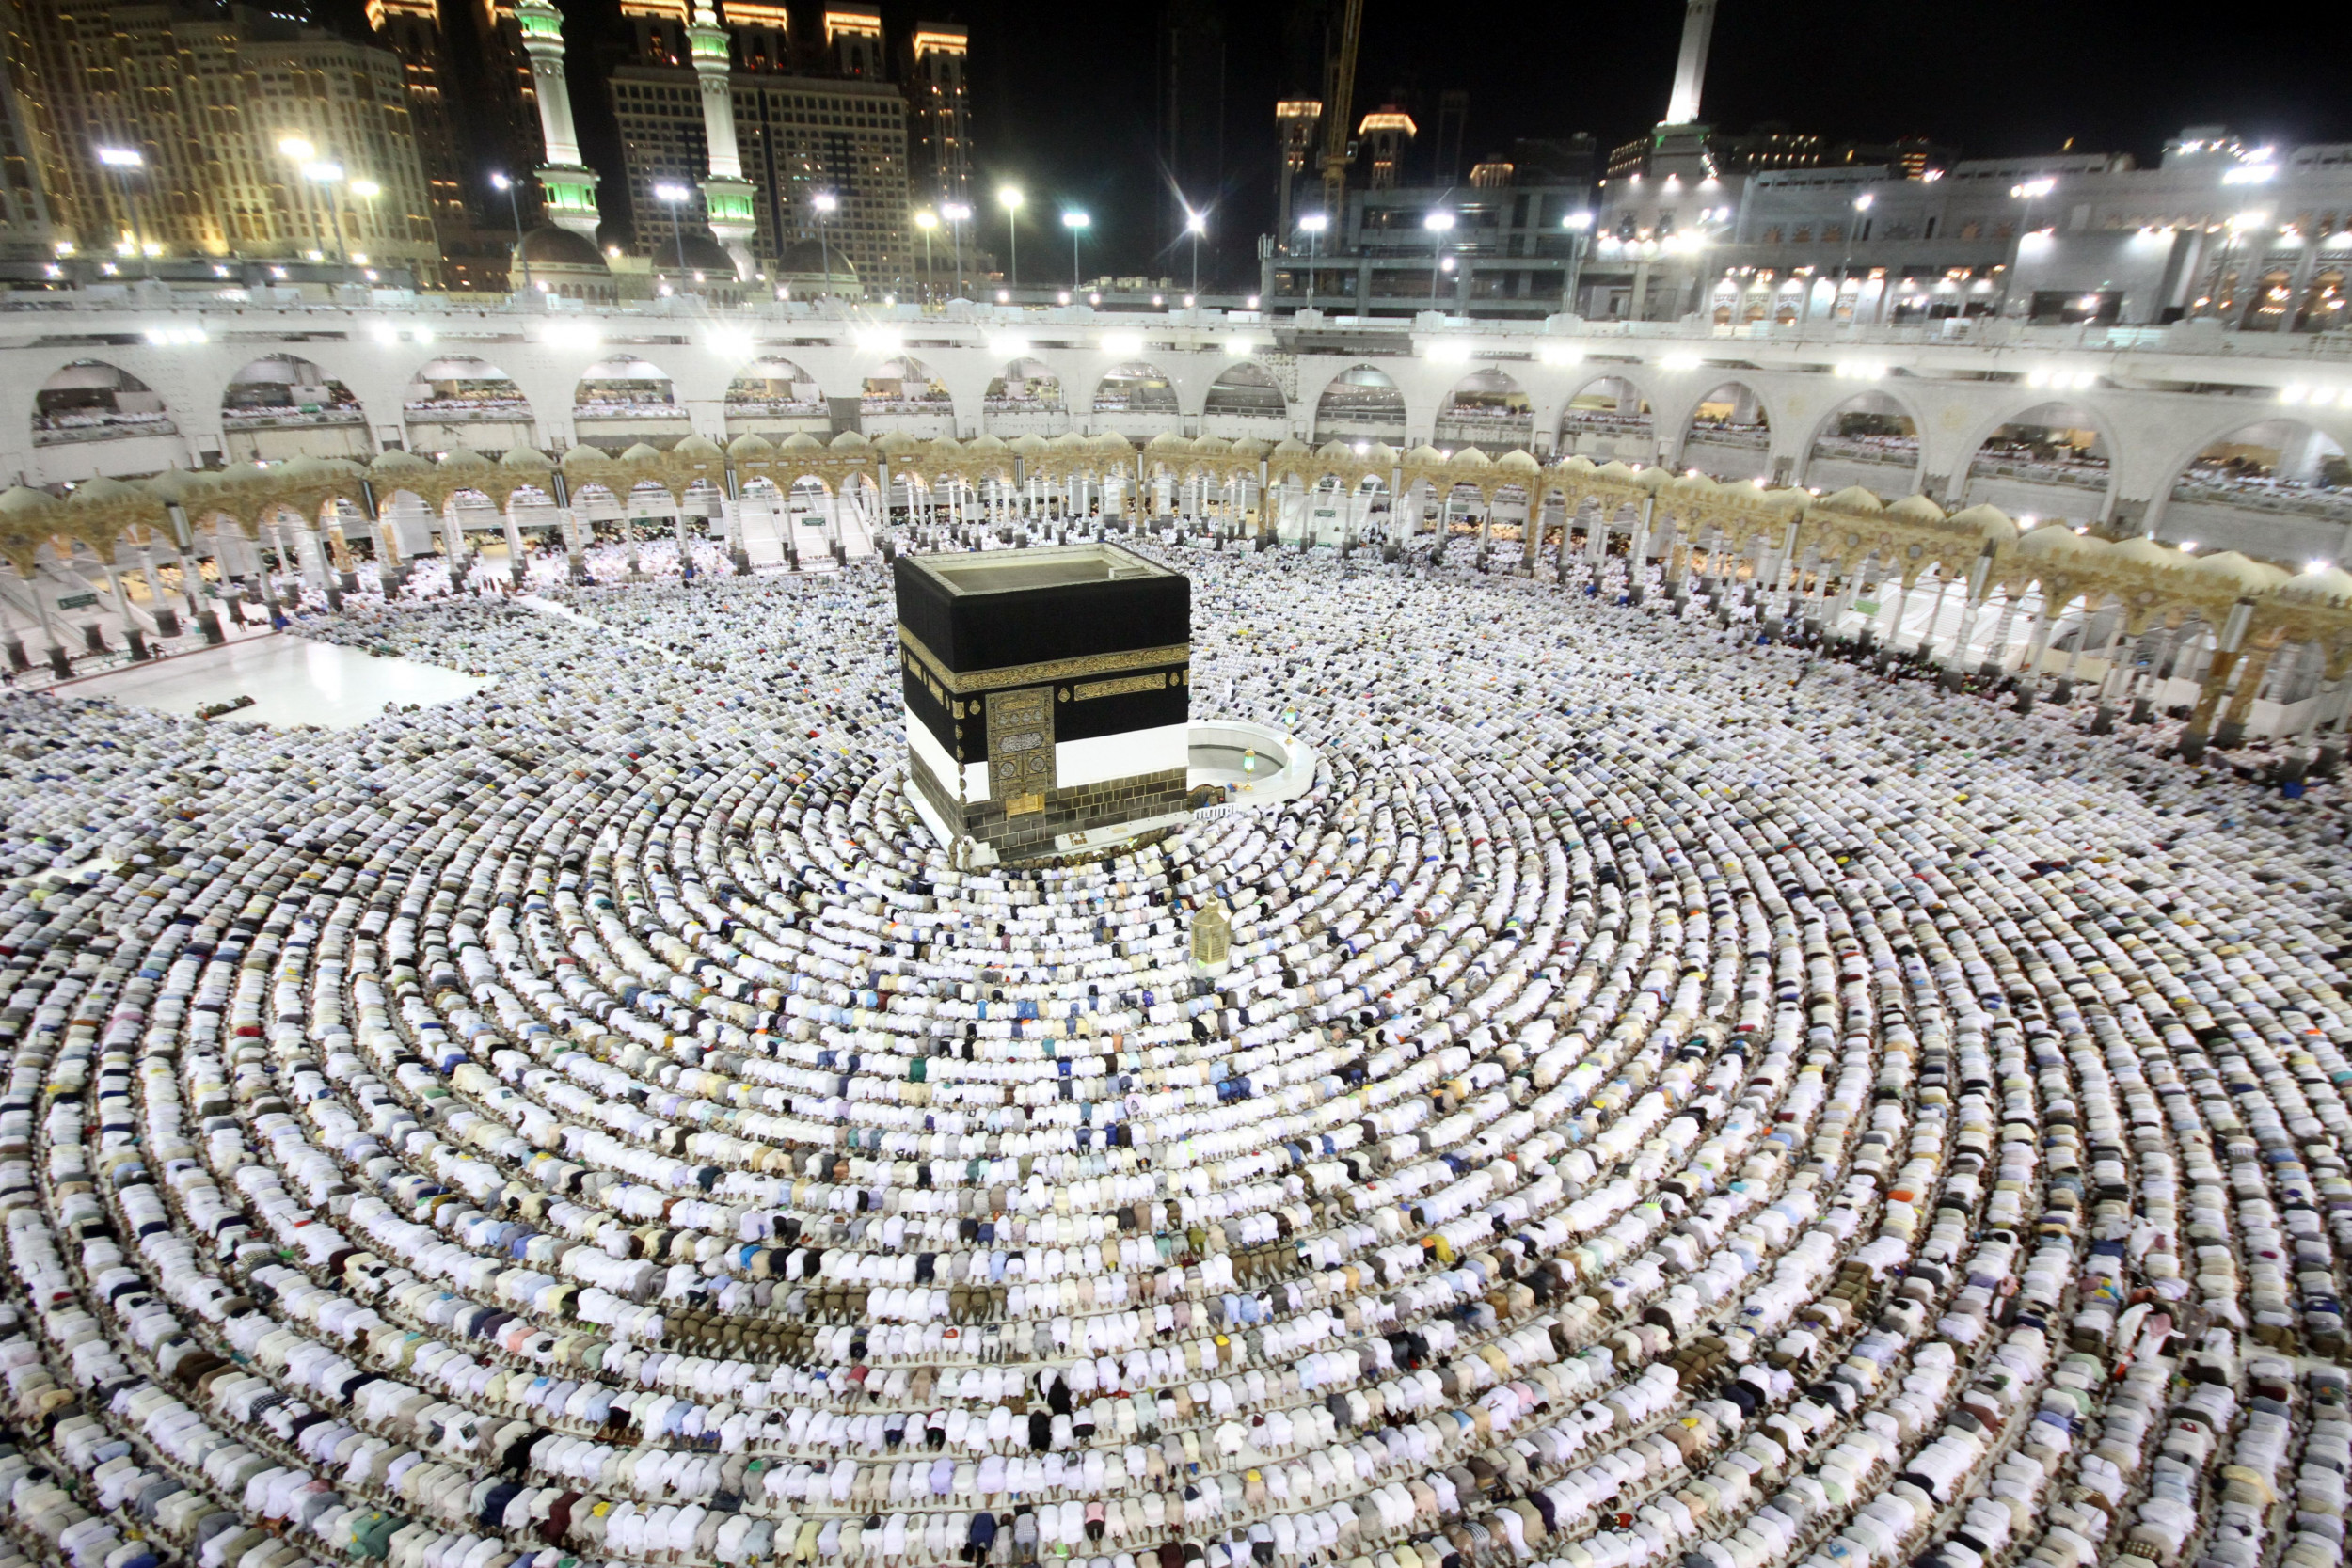 Mecca belongs to all Muslims, and Saudi Arabia shouldnt 